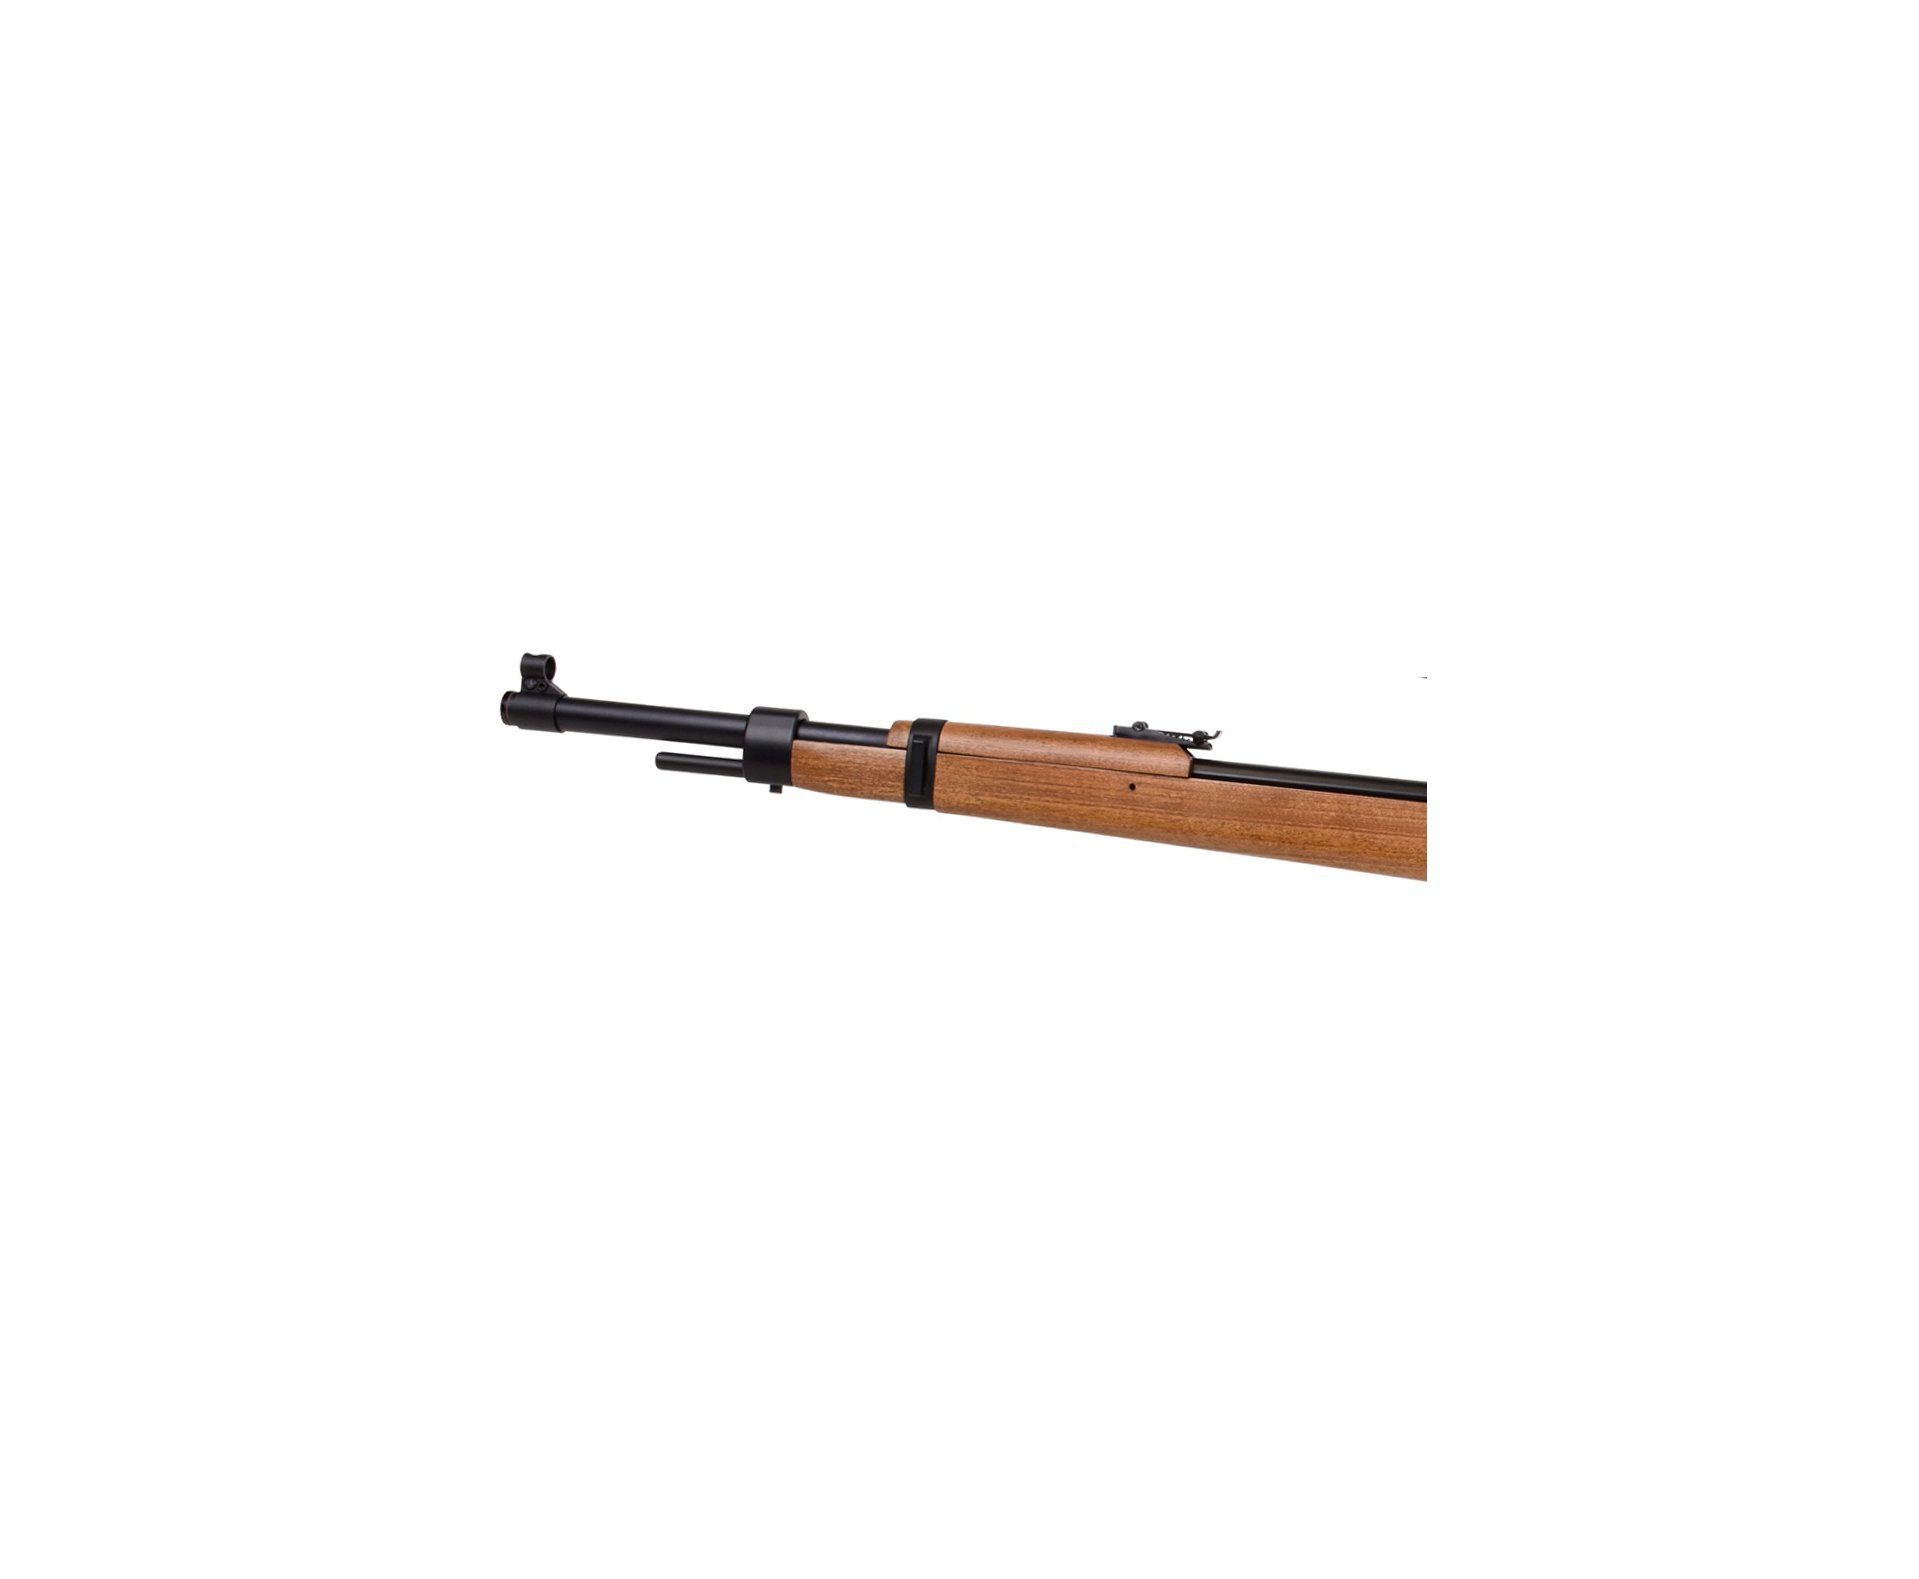 Carabina de Pressão PCP Mauser K98 5.5mm 10 tiros - Diana + Bomba + Luneta 4-16x40